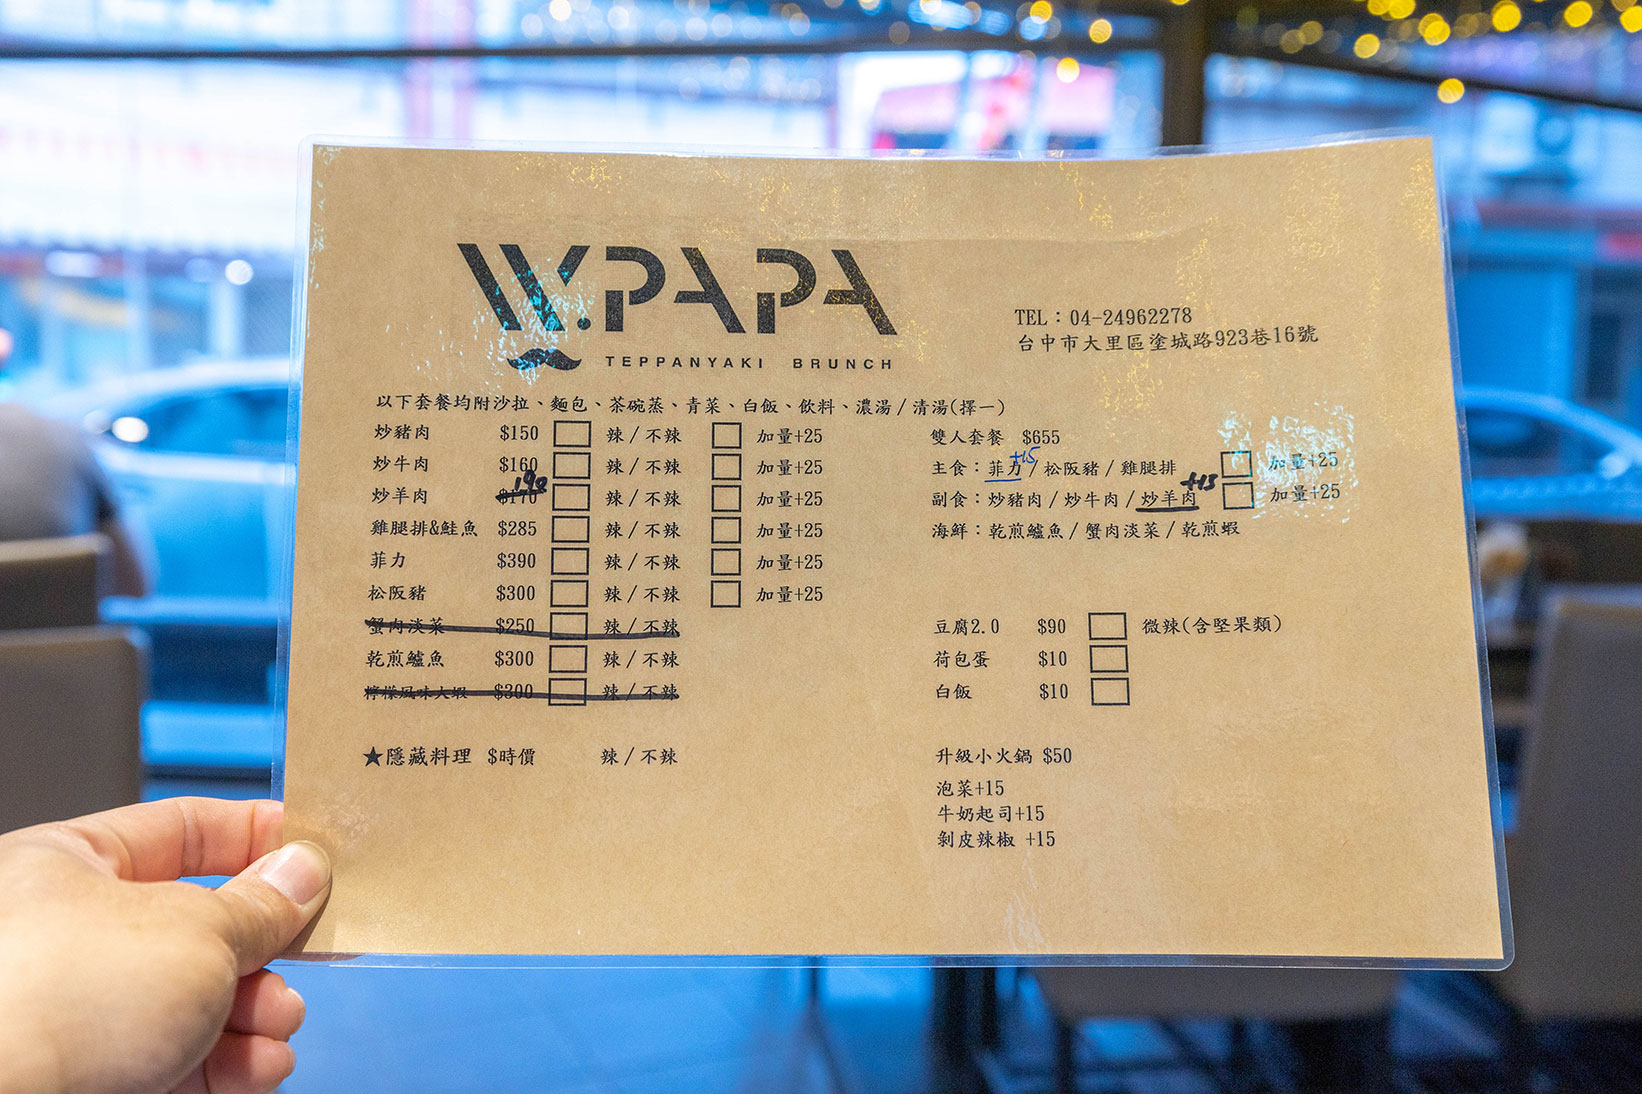 WPAPA Teppanyaki Brunch 早午餐鐵板料理